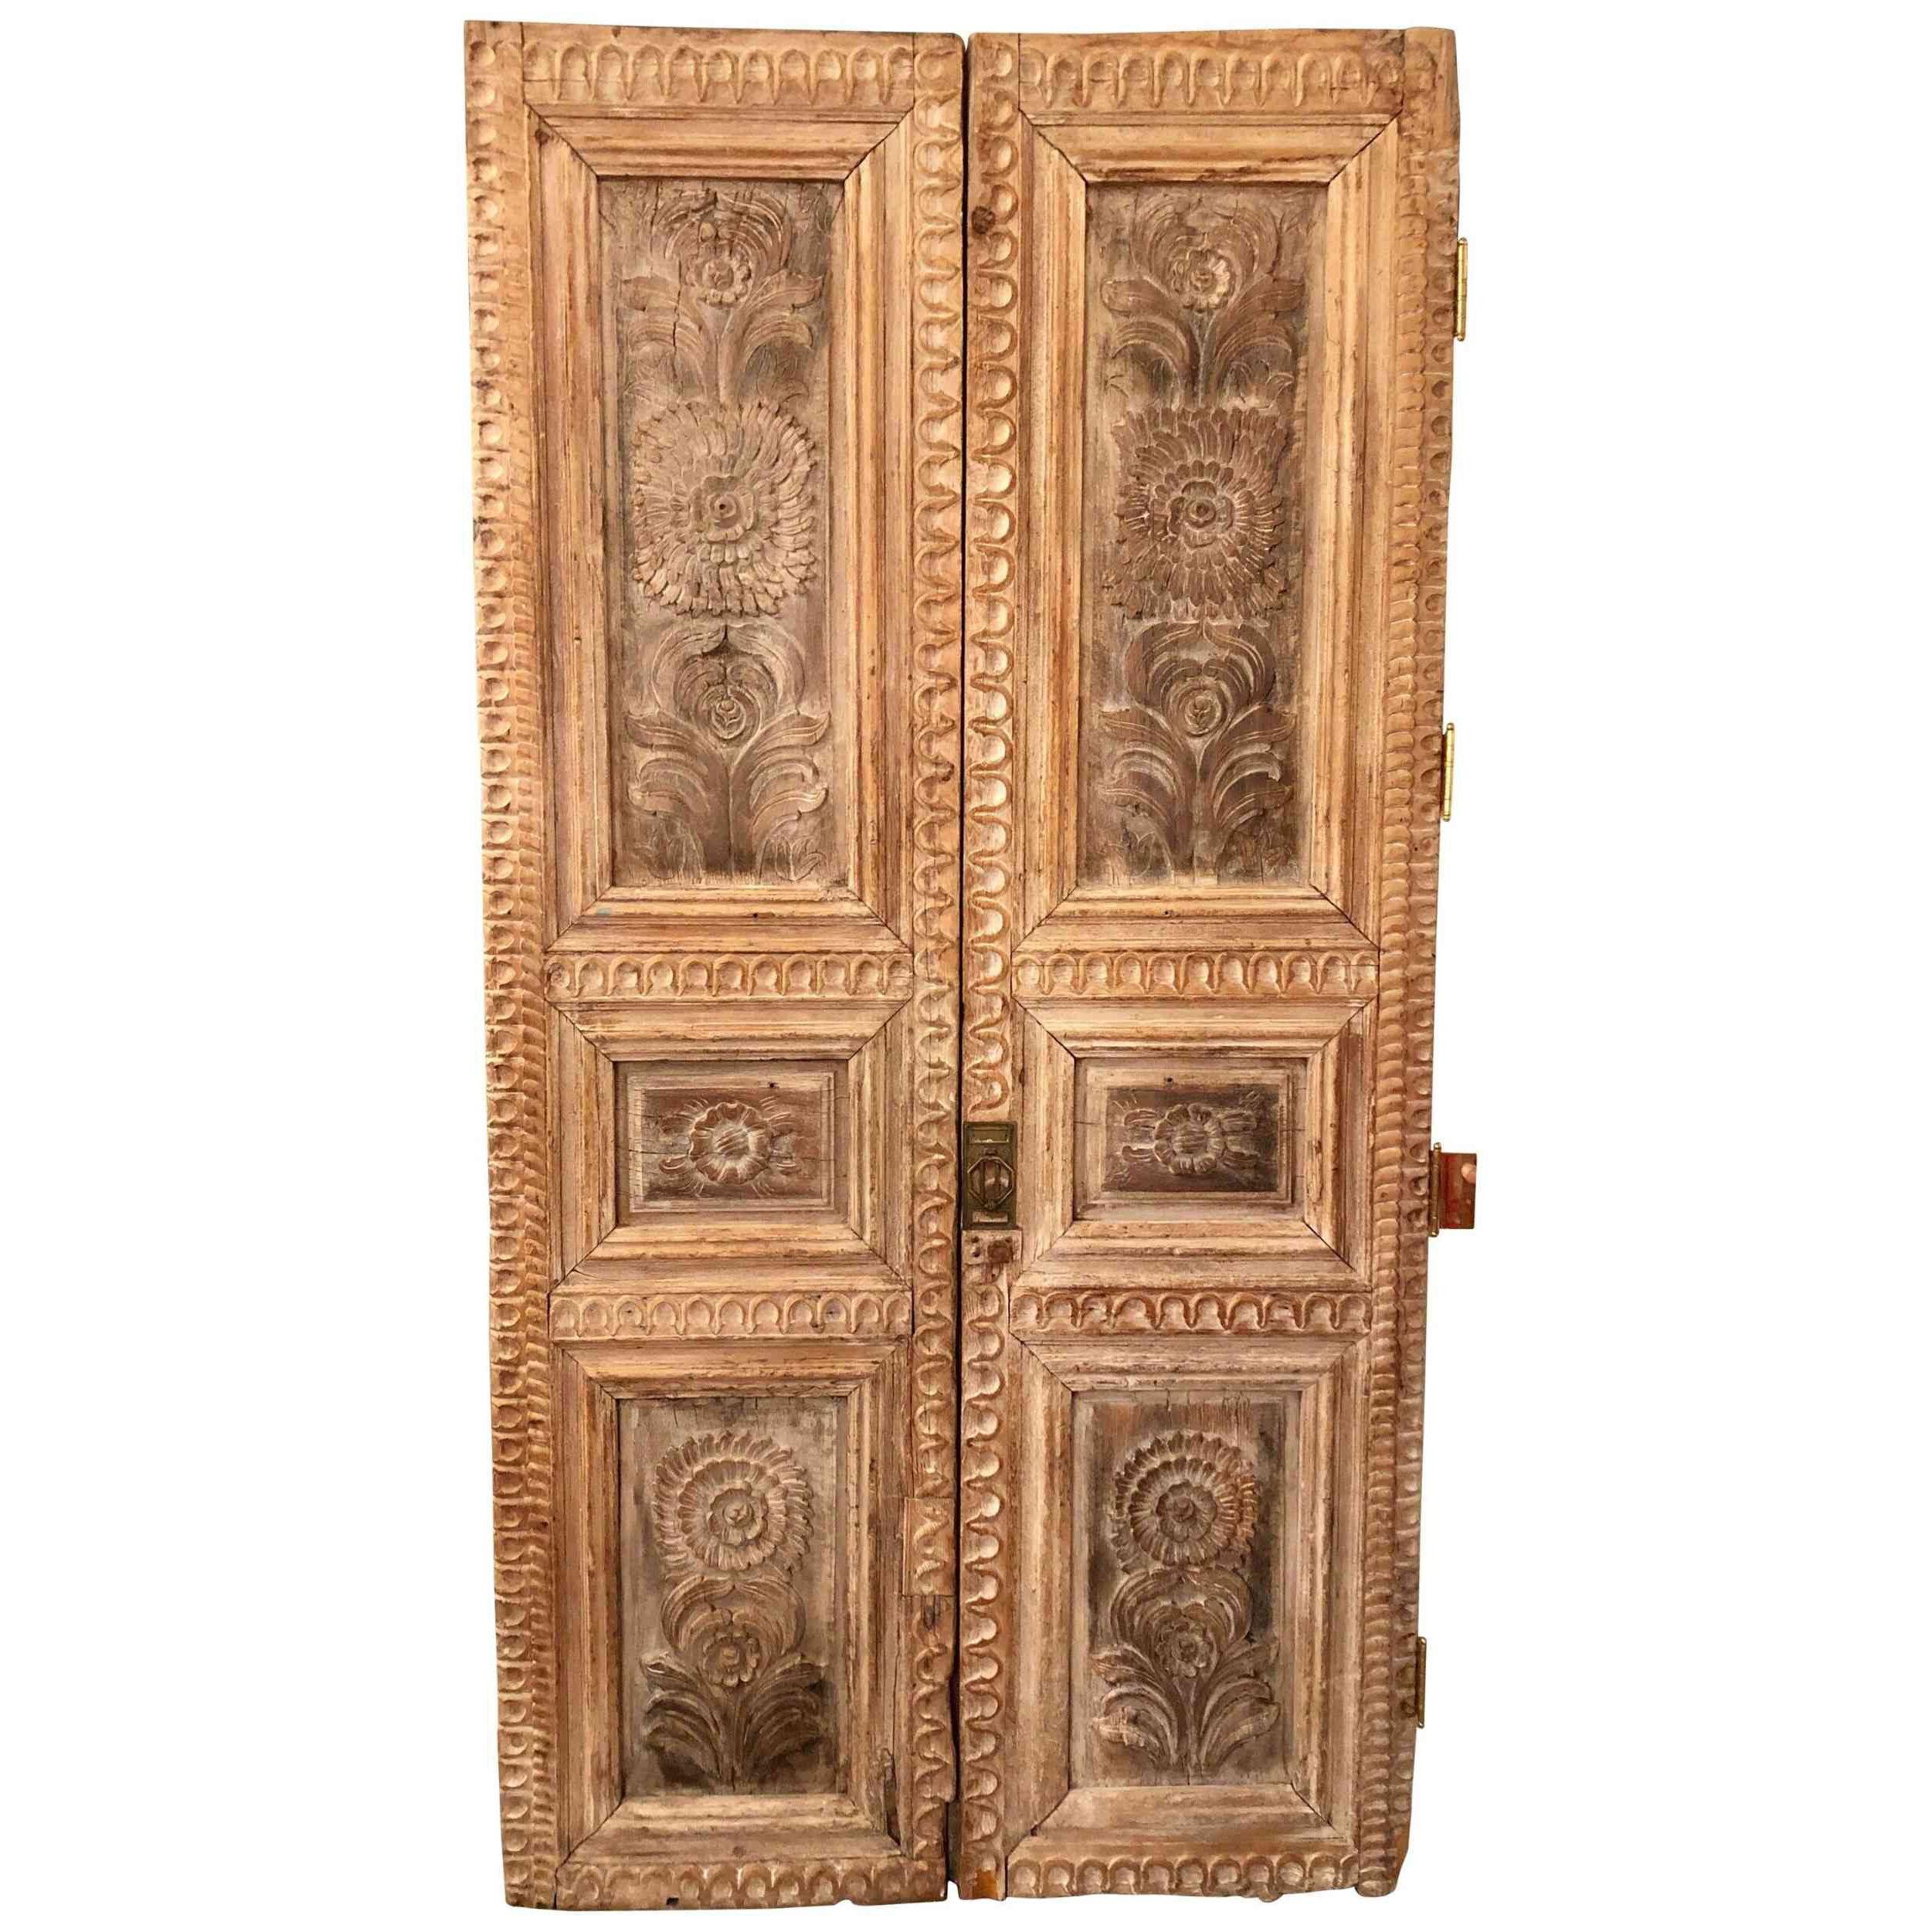 Pair of 19th Century Monumental Folk Art Doorways Mounted as Room Divider